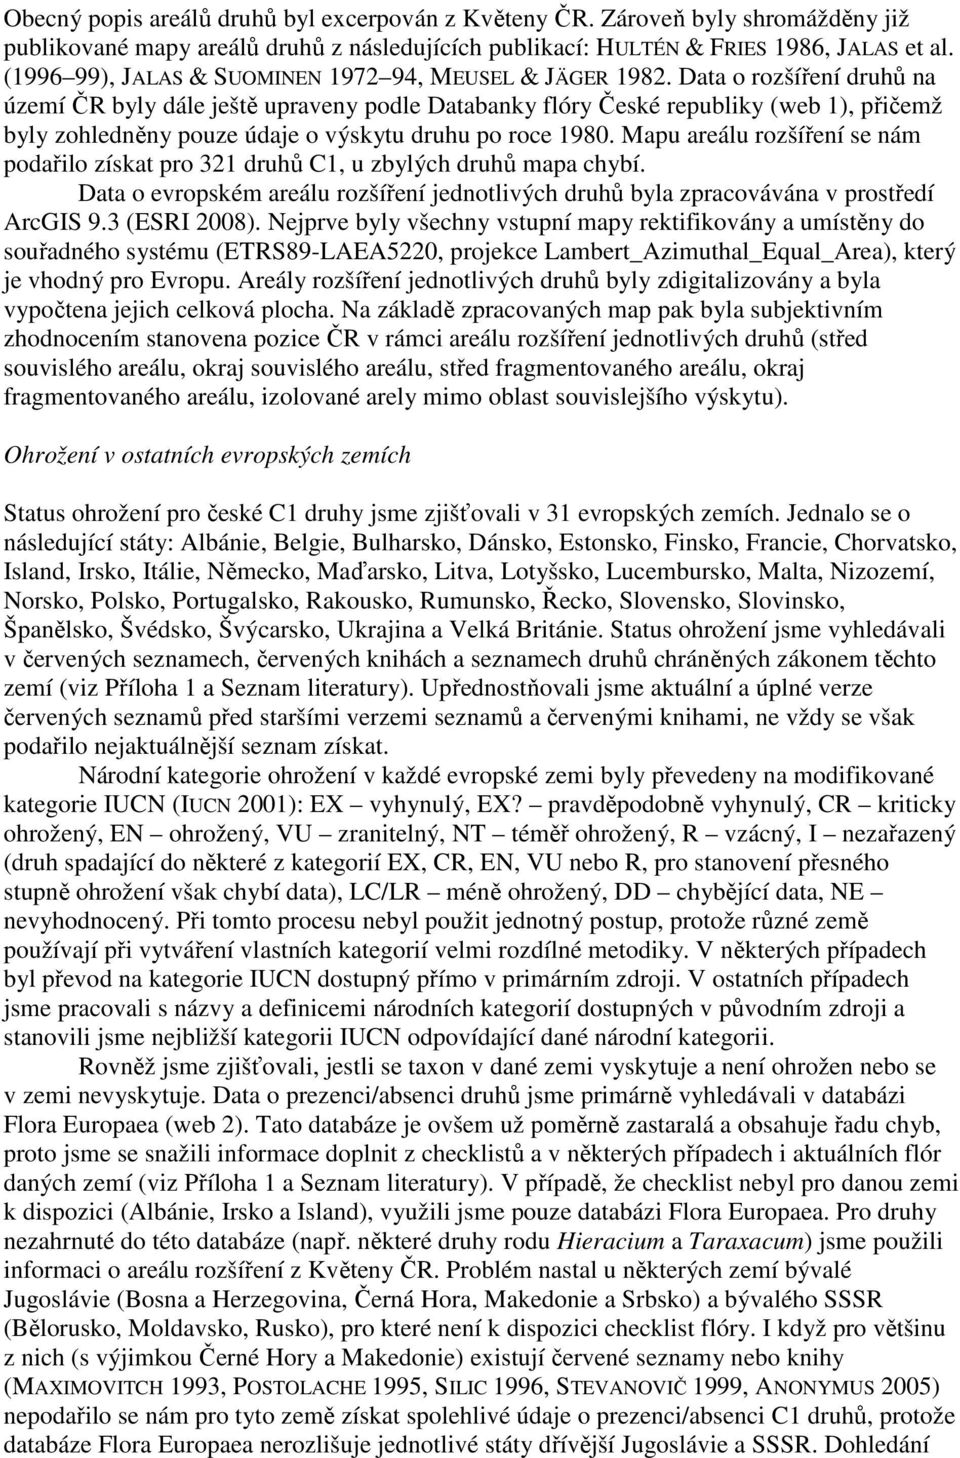 Data o rozšíření druhů na území ČR byly dále ještě upraveny podle Databanky flóry České republiky (web 1), přičemž byly zohledněny pouze údaje o výskytu druhu po roce 1980.